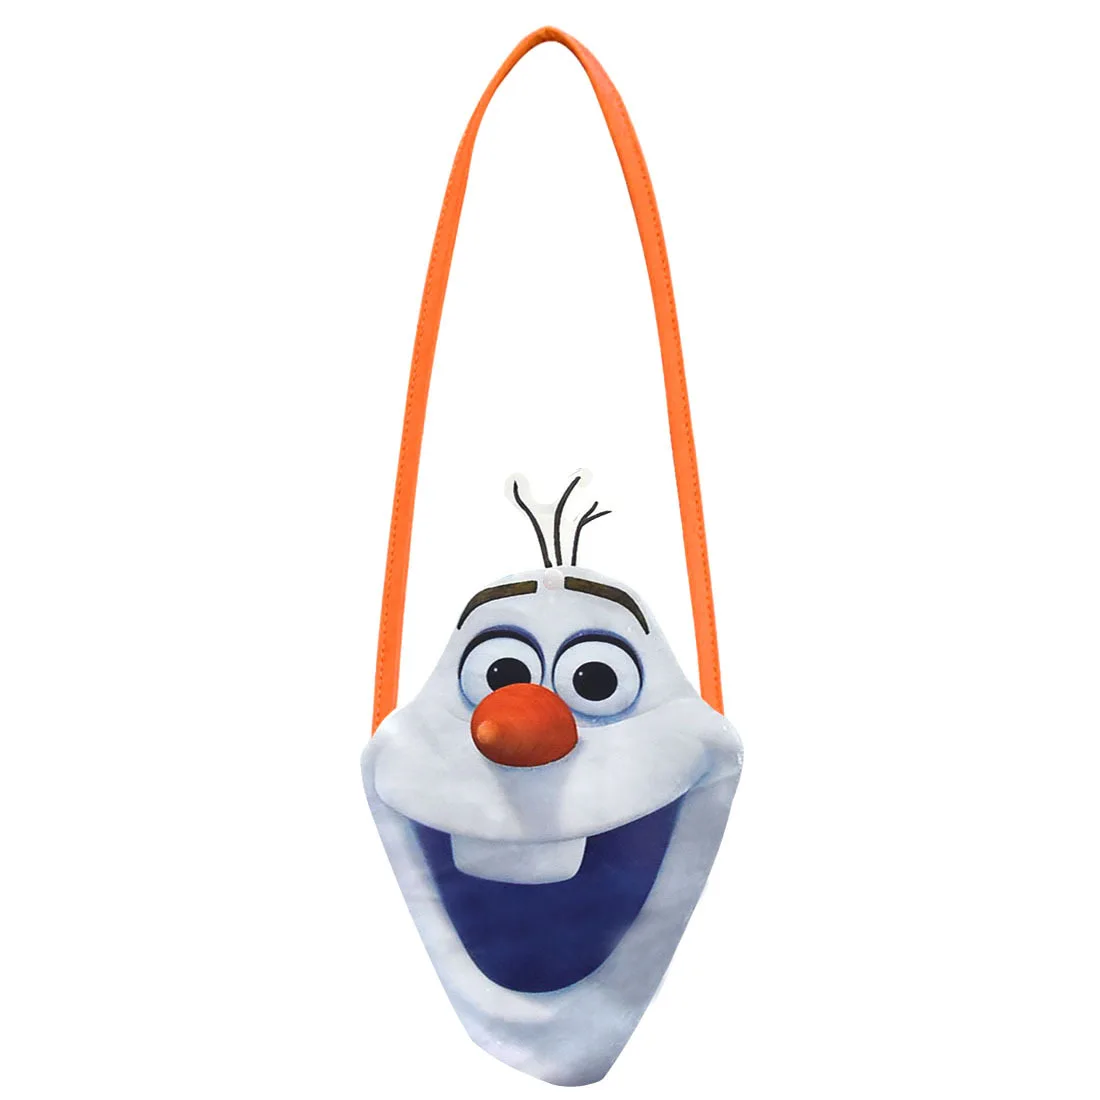 

Disney Frozen 2 New Cartoon Bag Anna Elsa Olaf Snowflower Anime Figure Children's Small Shoulder Bag Girl's Favorite Gift Toys